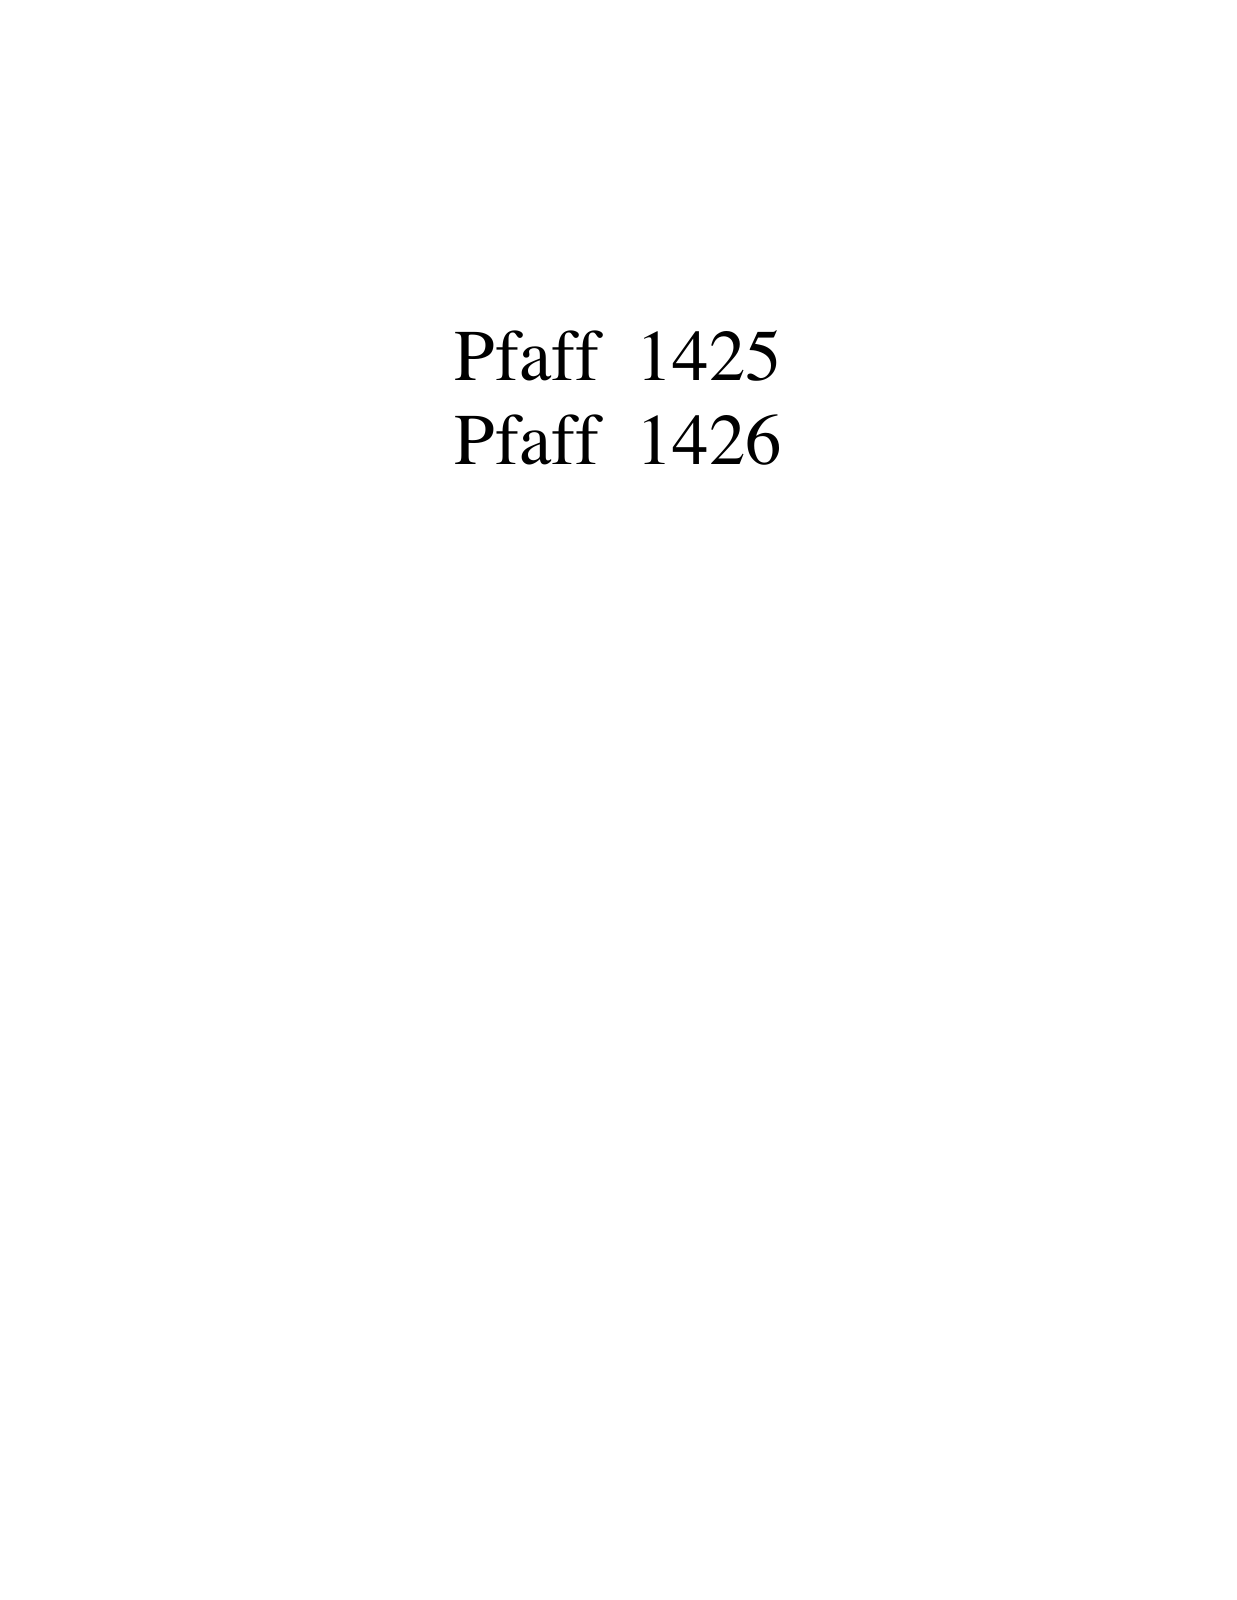 PFAFF 1425, 1426 Parts List